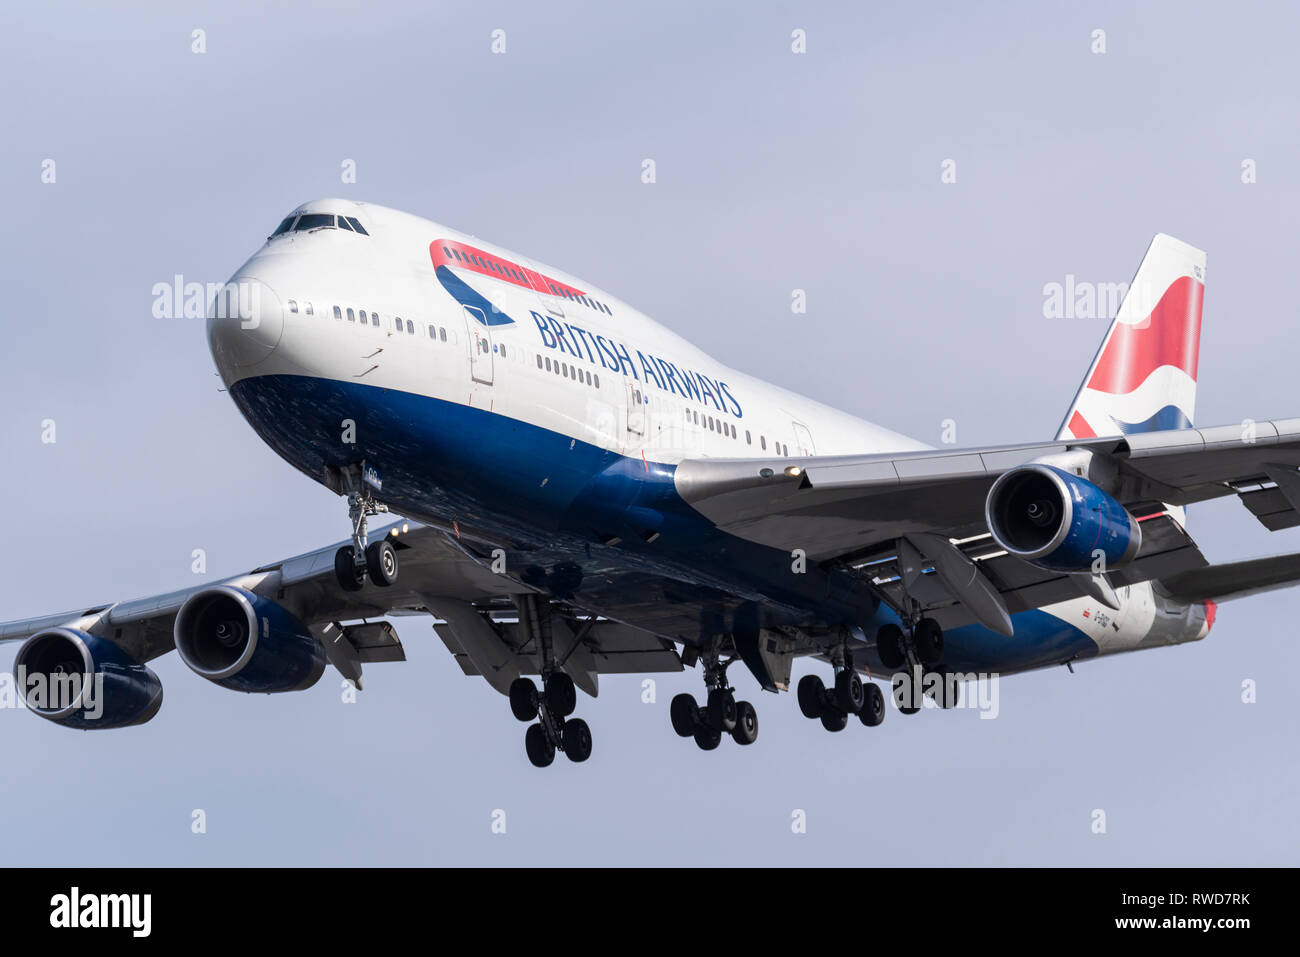 British Airways Boeing 747 Jumbo Jet aereo di linea G-BYGG che atterra all'aeroporto di Londra Heathrow, Regno Unito Foto Stock